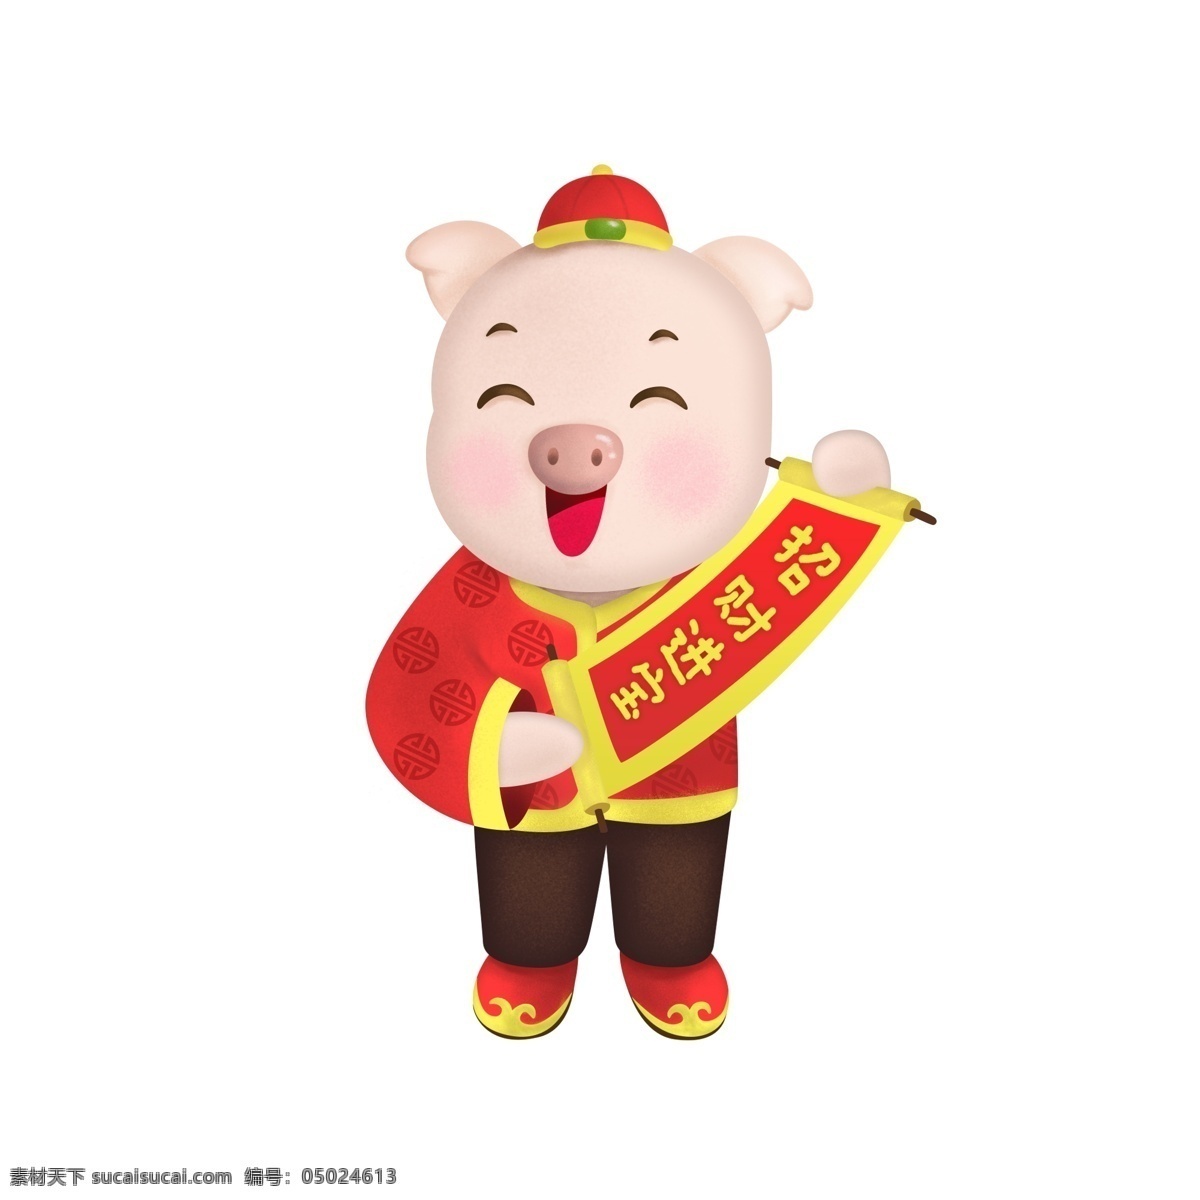 春节 新年 猪年 卡通 生肖 猪 喜庆 招财进宝 拜年 卡通猪 生肖猪